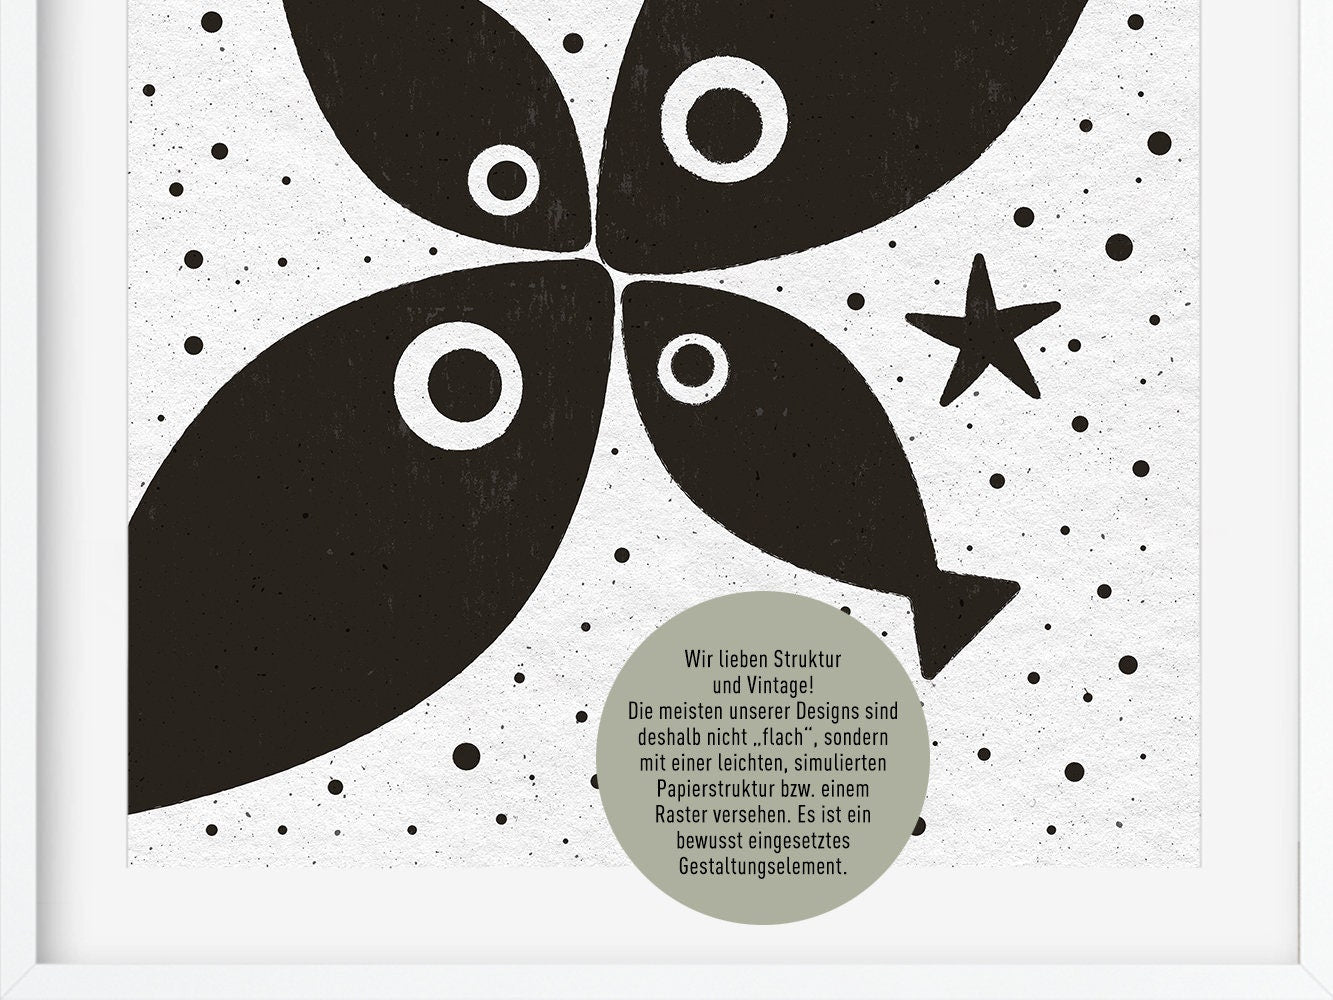 Digital Artwork ›Fish and Starfish 01‹ / Wanddeko, Digitales Poster, skandinavisch, reduziert, s/w, druckbarer Digital Download – jede Größe